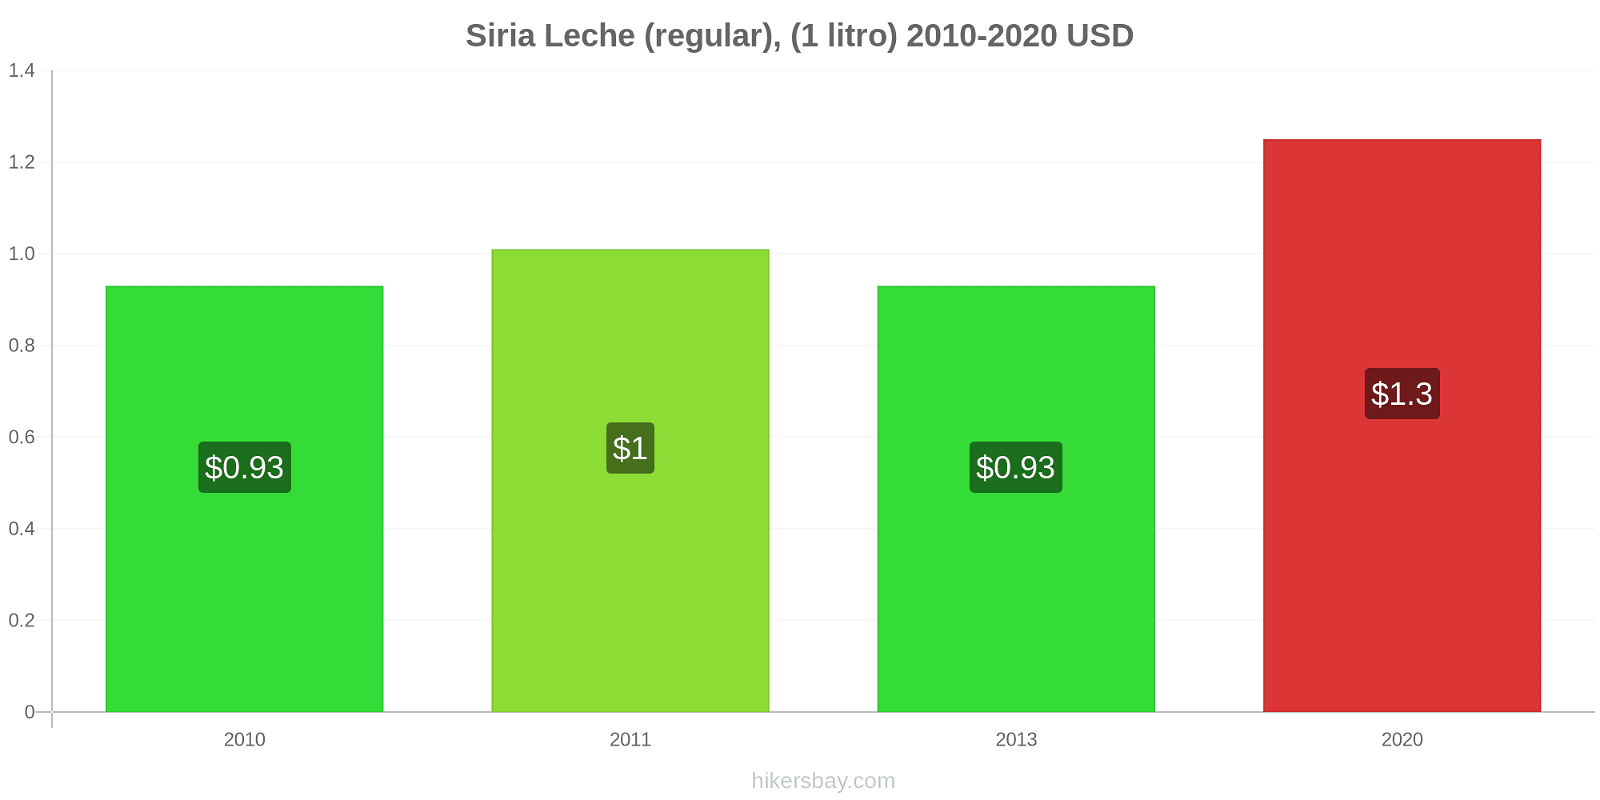 Siria cambios de precios Leche (Regular), (1 litro) hikersbay.com